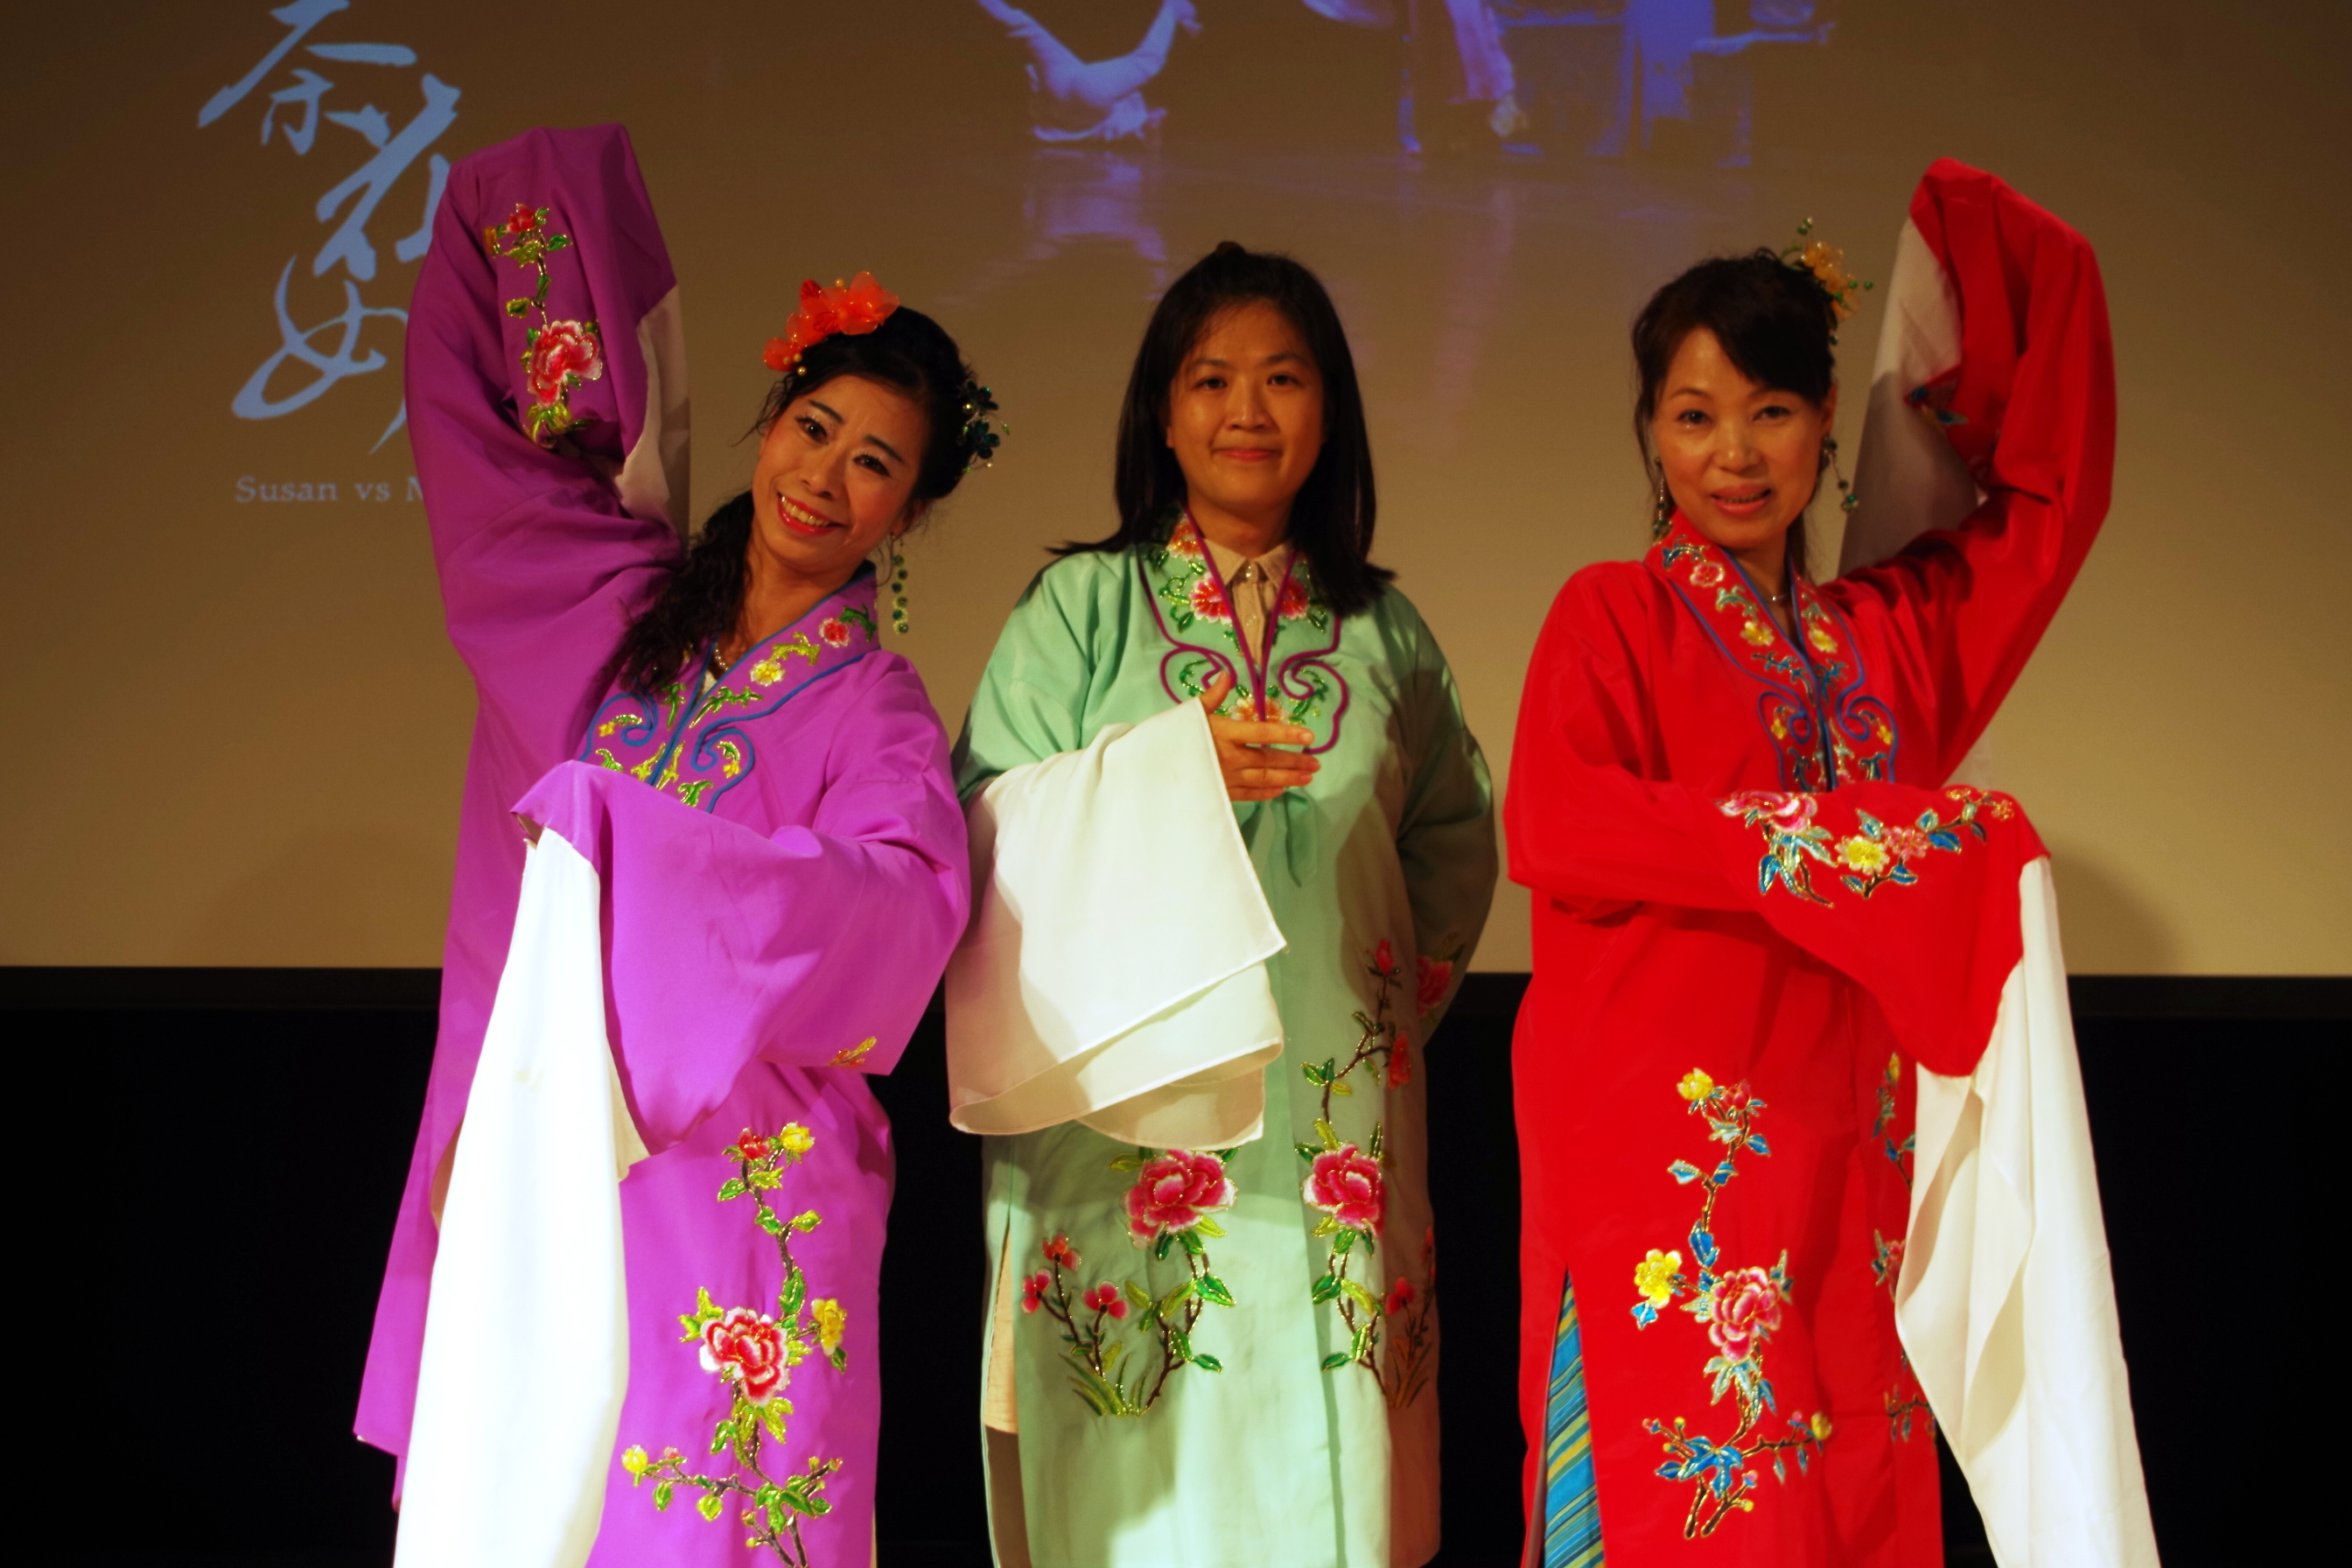 府中15「歌仔戲傳奇三部曲」放映會  臺北傳統戲劇團 創團15年 52歲社區媽媽 再現歌仔戲傳奇